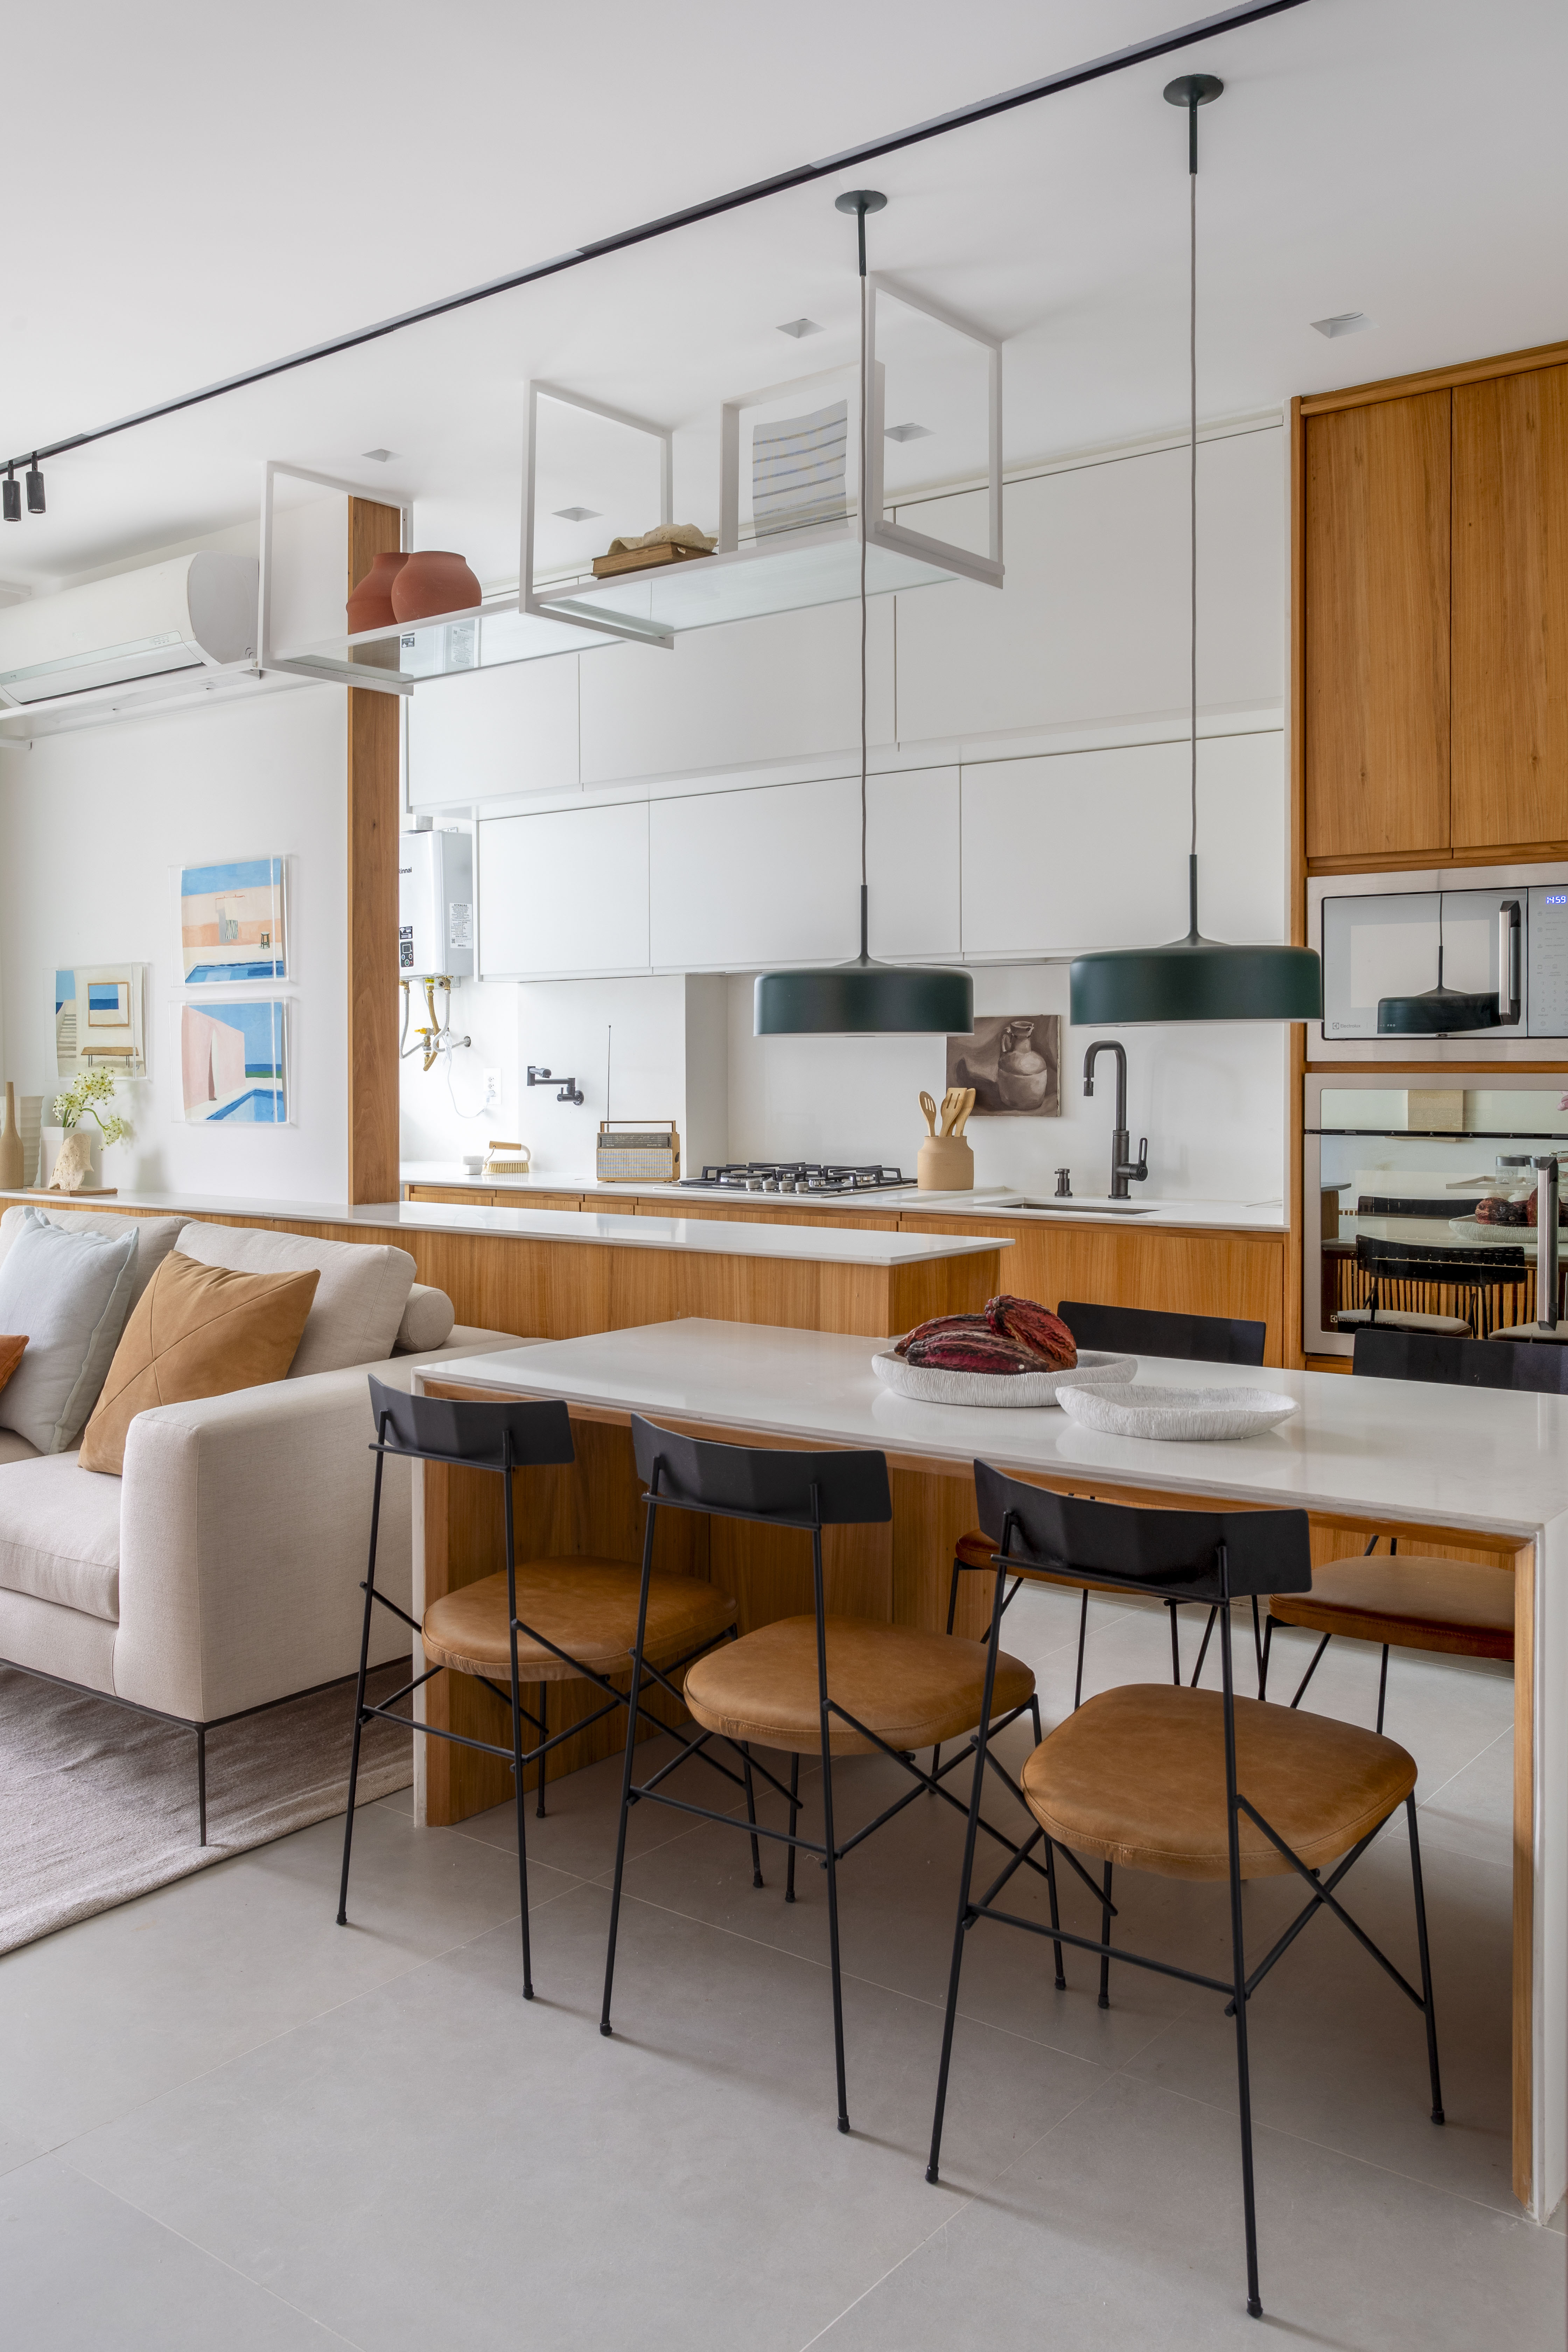 Branco e madeira criam décor cozy em apartamento de 70 m². Projeto de Rafael Ramos. Na foto, cozinha com bancada branca e de madeira.